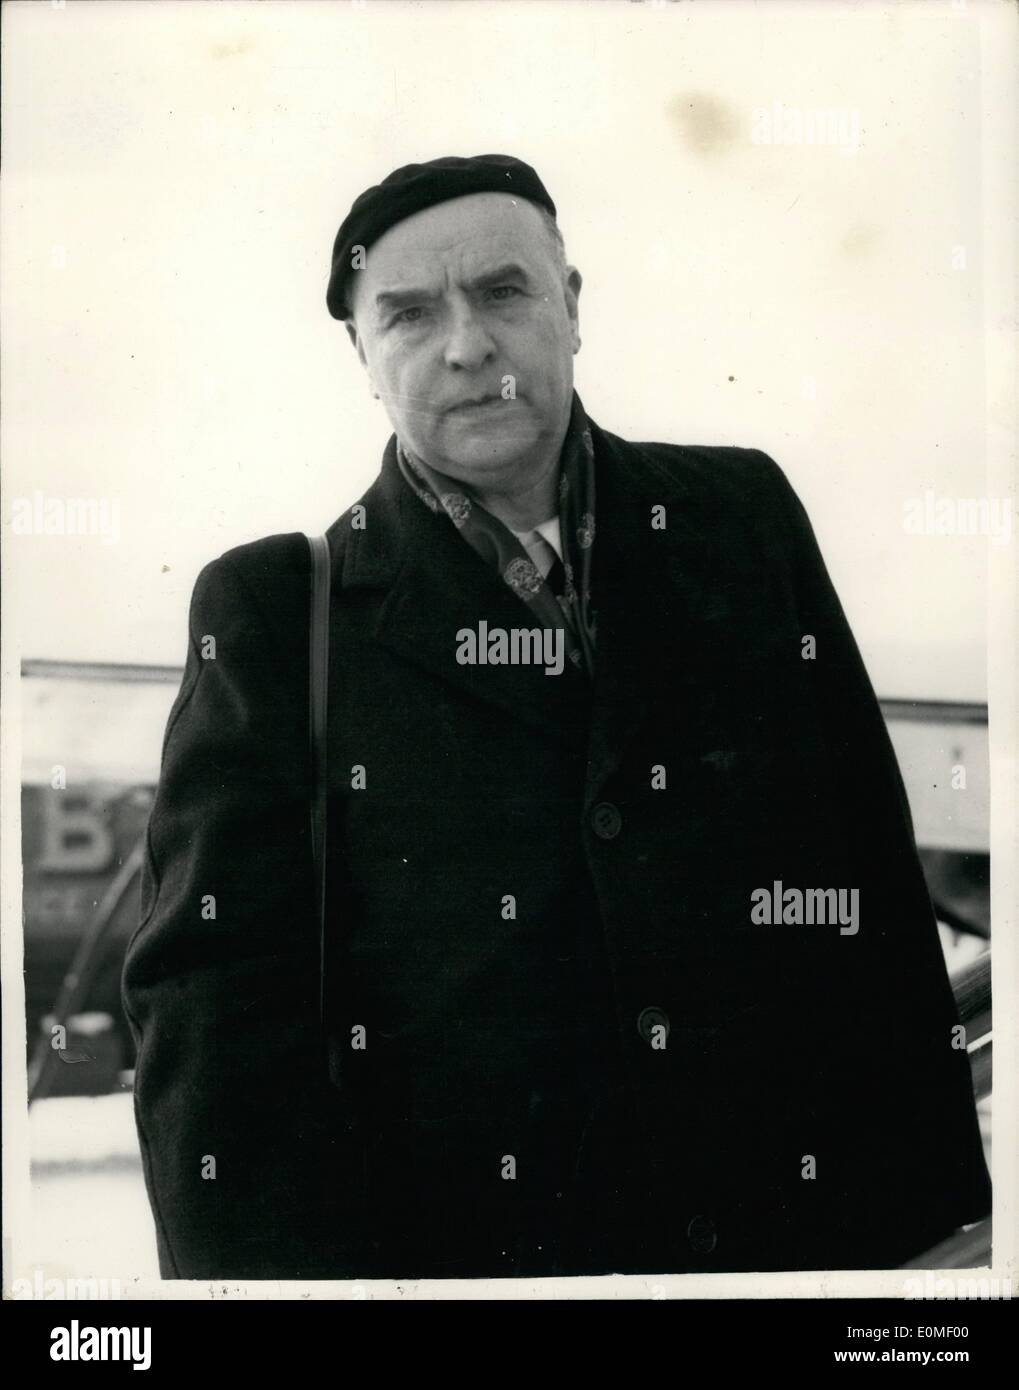 Febbraio 02, 1955 - ''nuovo Führer'' ha rifiutato il permesso di soggiorno a Londra Dr Otto Stasser collocati a bordo di aeromobili di Zurigo; Dr Otto Stasser l uomo che Hitler esiliato è stato messo in una cella di detenzione all'Aeroporto di Londra di questa mattina quando è arrivato dal Canada. Egli fu poi messo a bordo di un aereo Swissair per Zurigo che è stato rifiutato il permesso di soggiorno da parte dell'ufficio a casa. Si è detto che in Germania - Stasser spera di iniziare un risveglio nazionalista. Stasser lasciato la Germania 22 anni fa durante il Reichatag fire. Egli ha rotto dai nazisti per formare il ''Bolshavik nazionale'' Parte anteriore nera Foto Stock